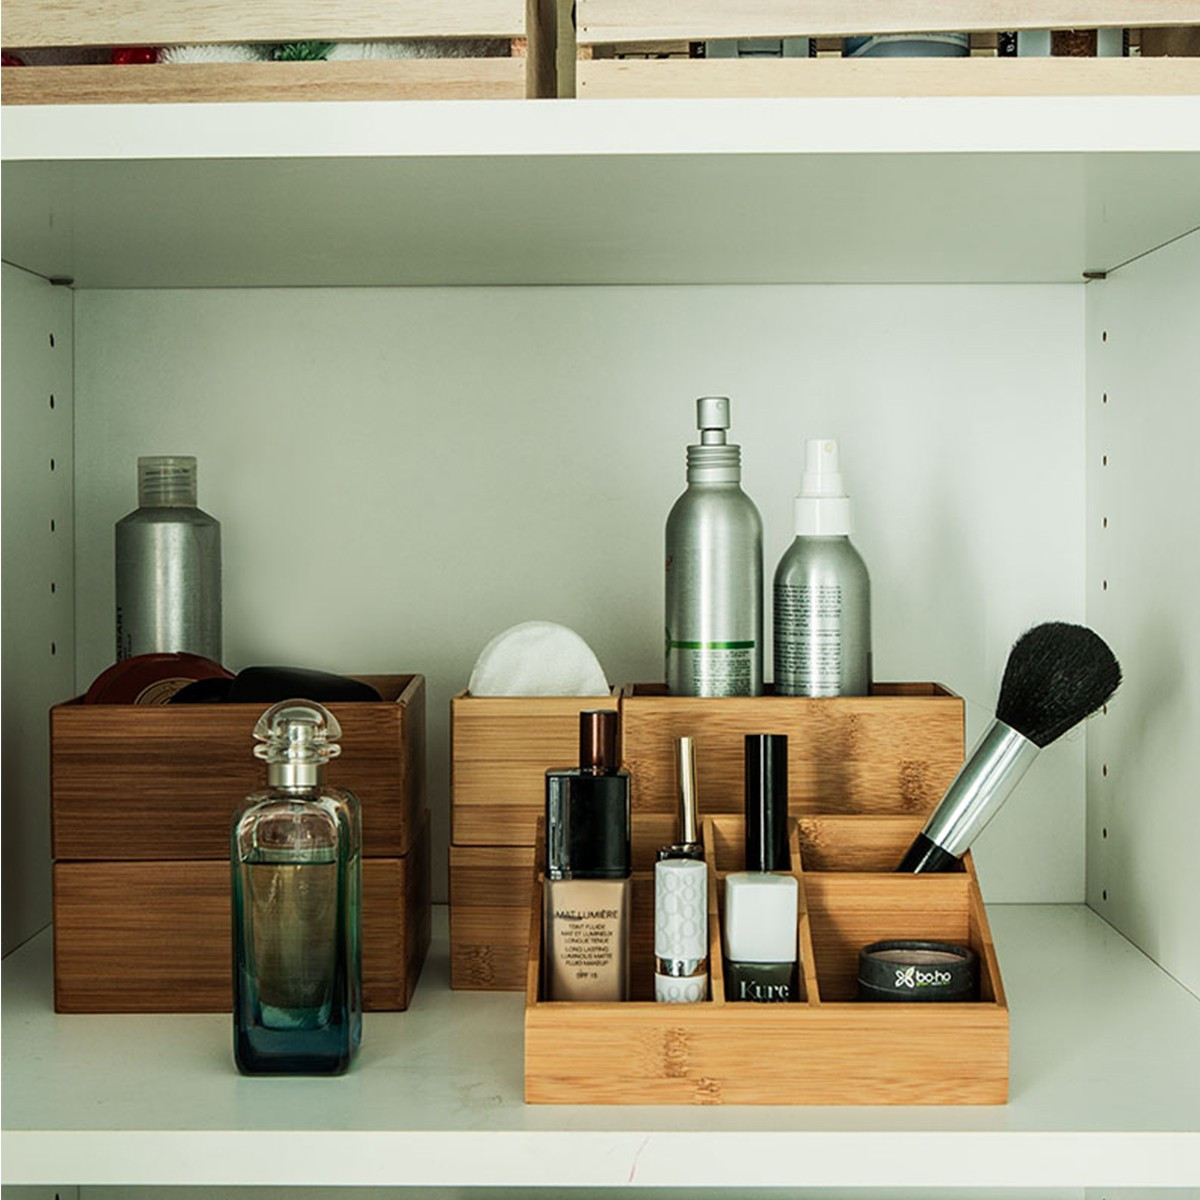 Rainsworth organisateur tiroir empilable en bambou – l, m, s boîte rangement  - lot de 6 organisateur de bureau rangement tiroir - rangement et  organisation de cuisine bureau maquillage salle de bain - Conforama